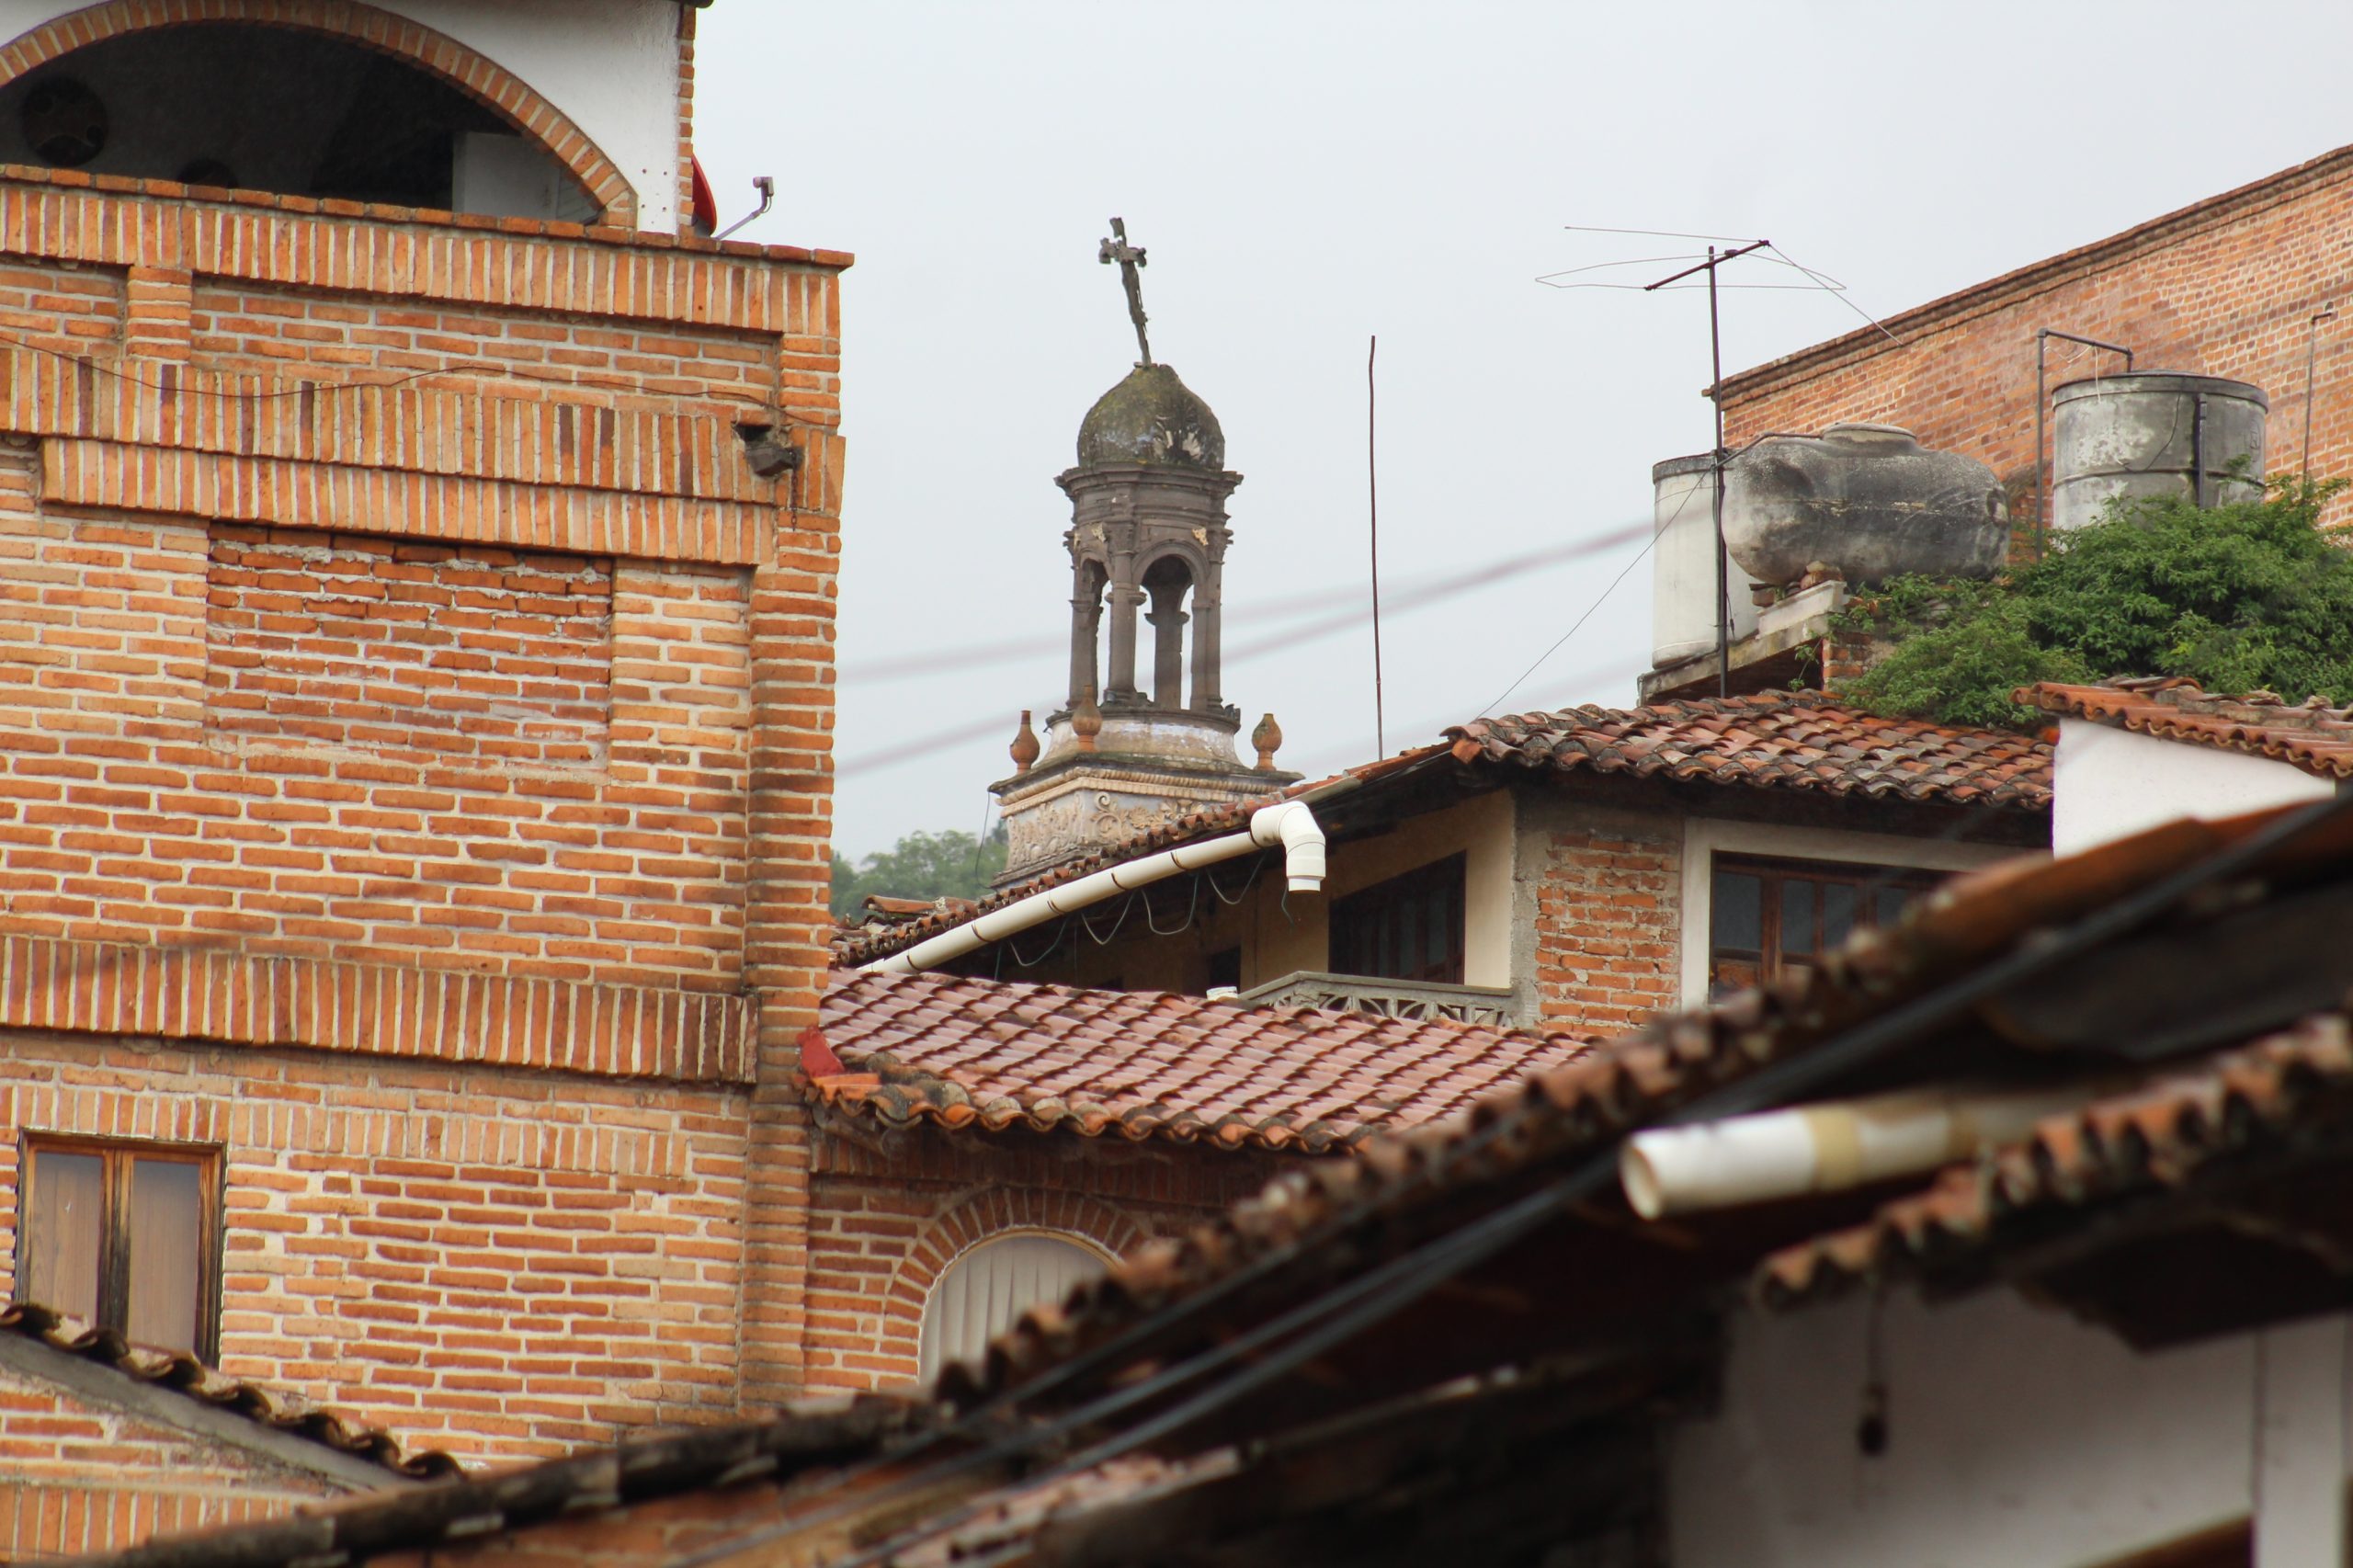 Iglesia con cruz chueca en su torre, en Talpa, Jalisco. Fotografía: Iván Serrano Jauregui